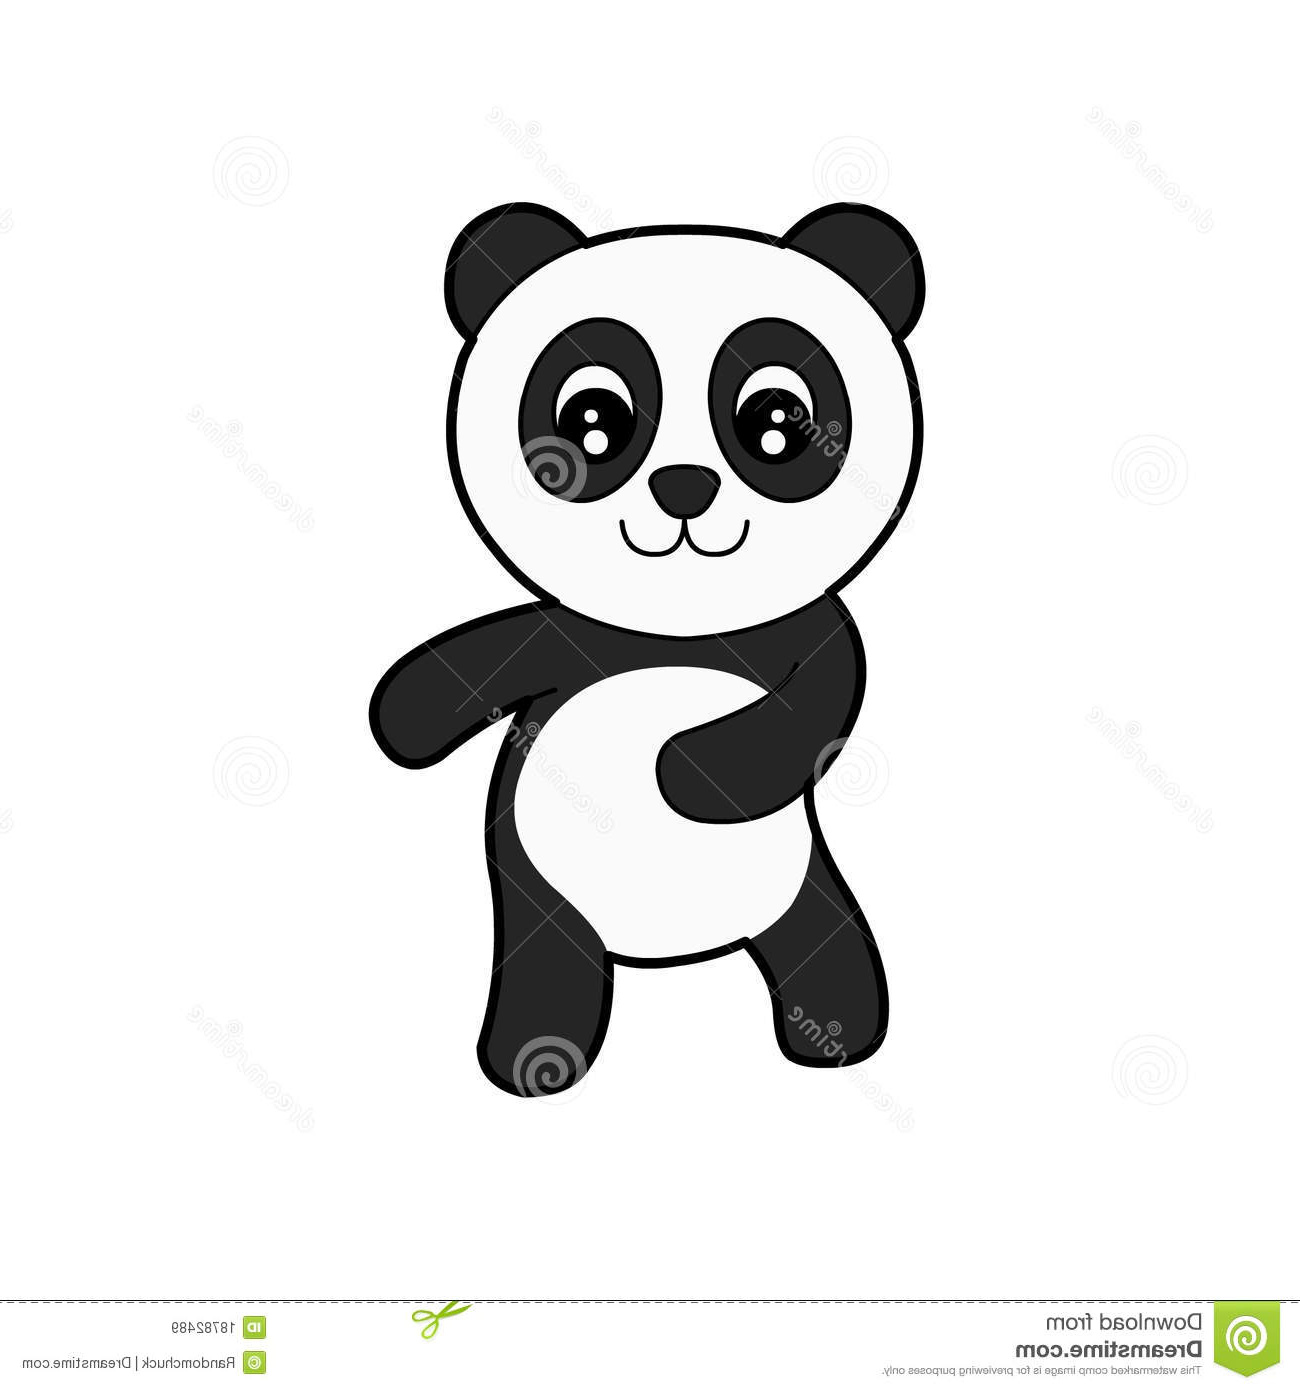 Dessin Van Nouveau Collection Dessins Gratuits à Colorier Coloriage Pandas à Imprimer